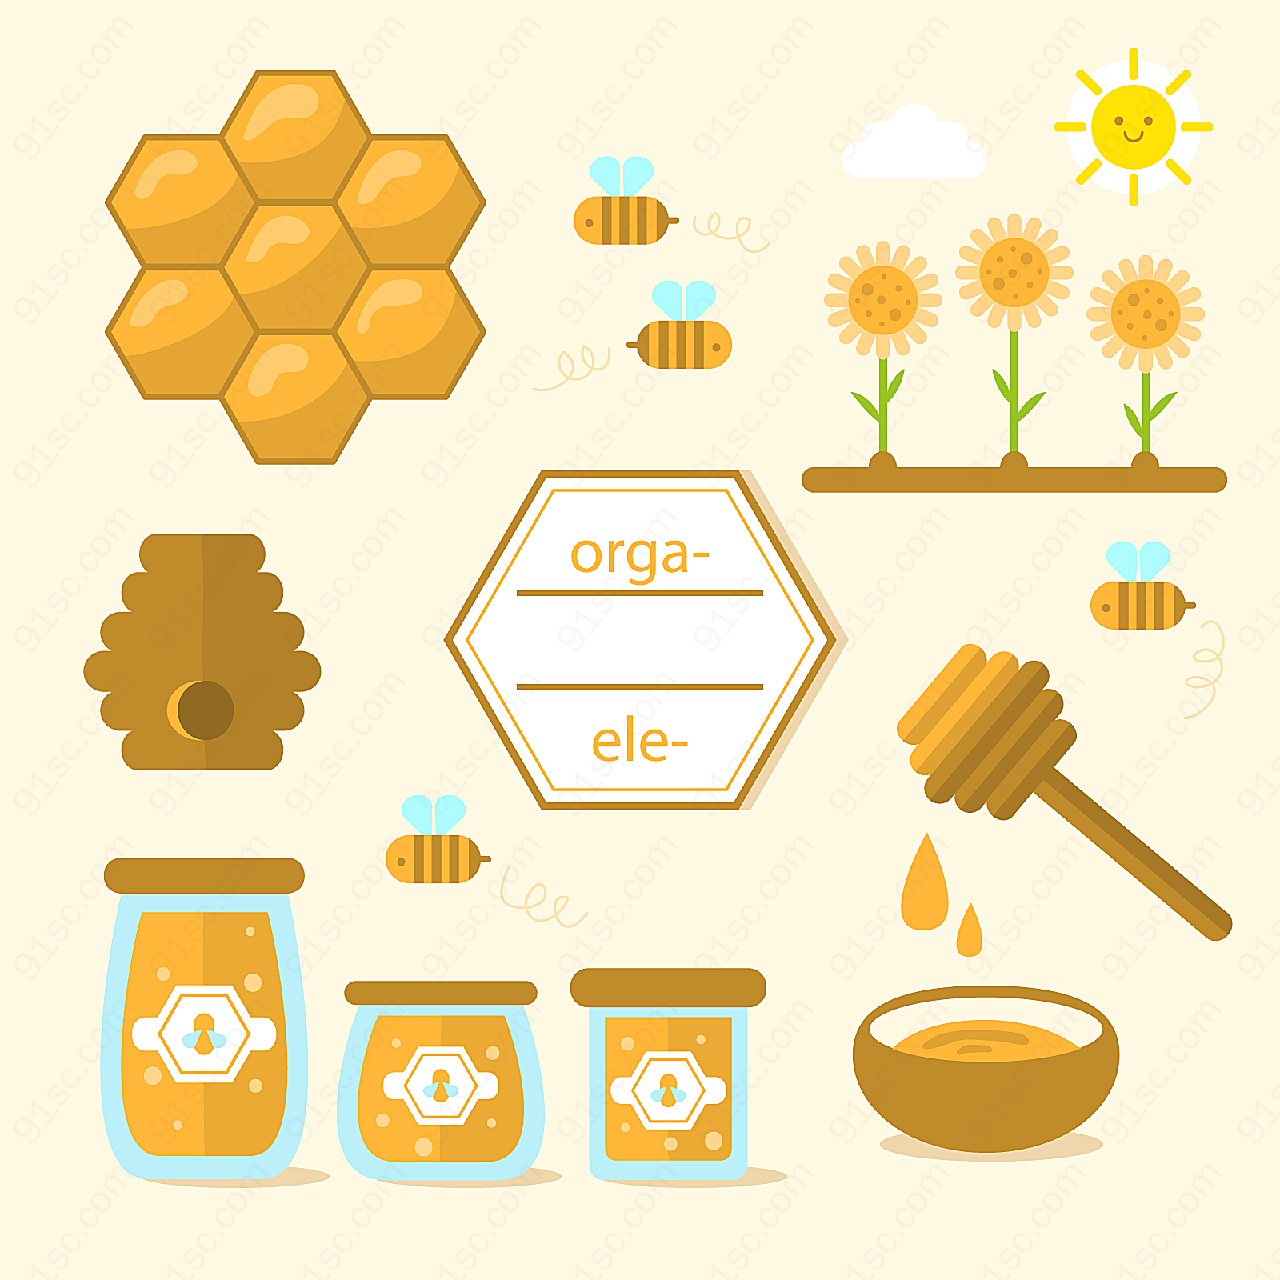 有机蜂蜜元素矢量其它食品